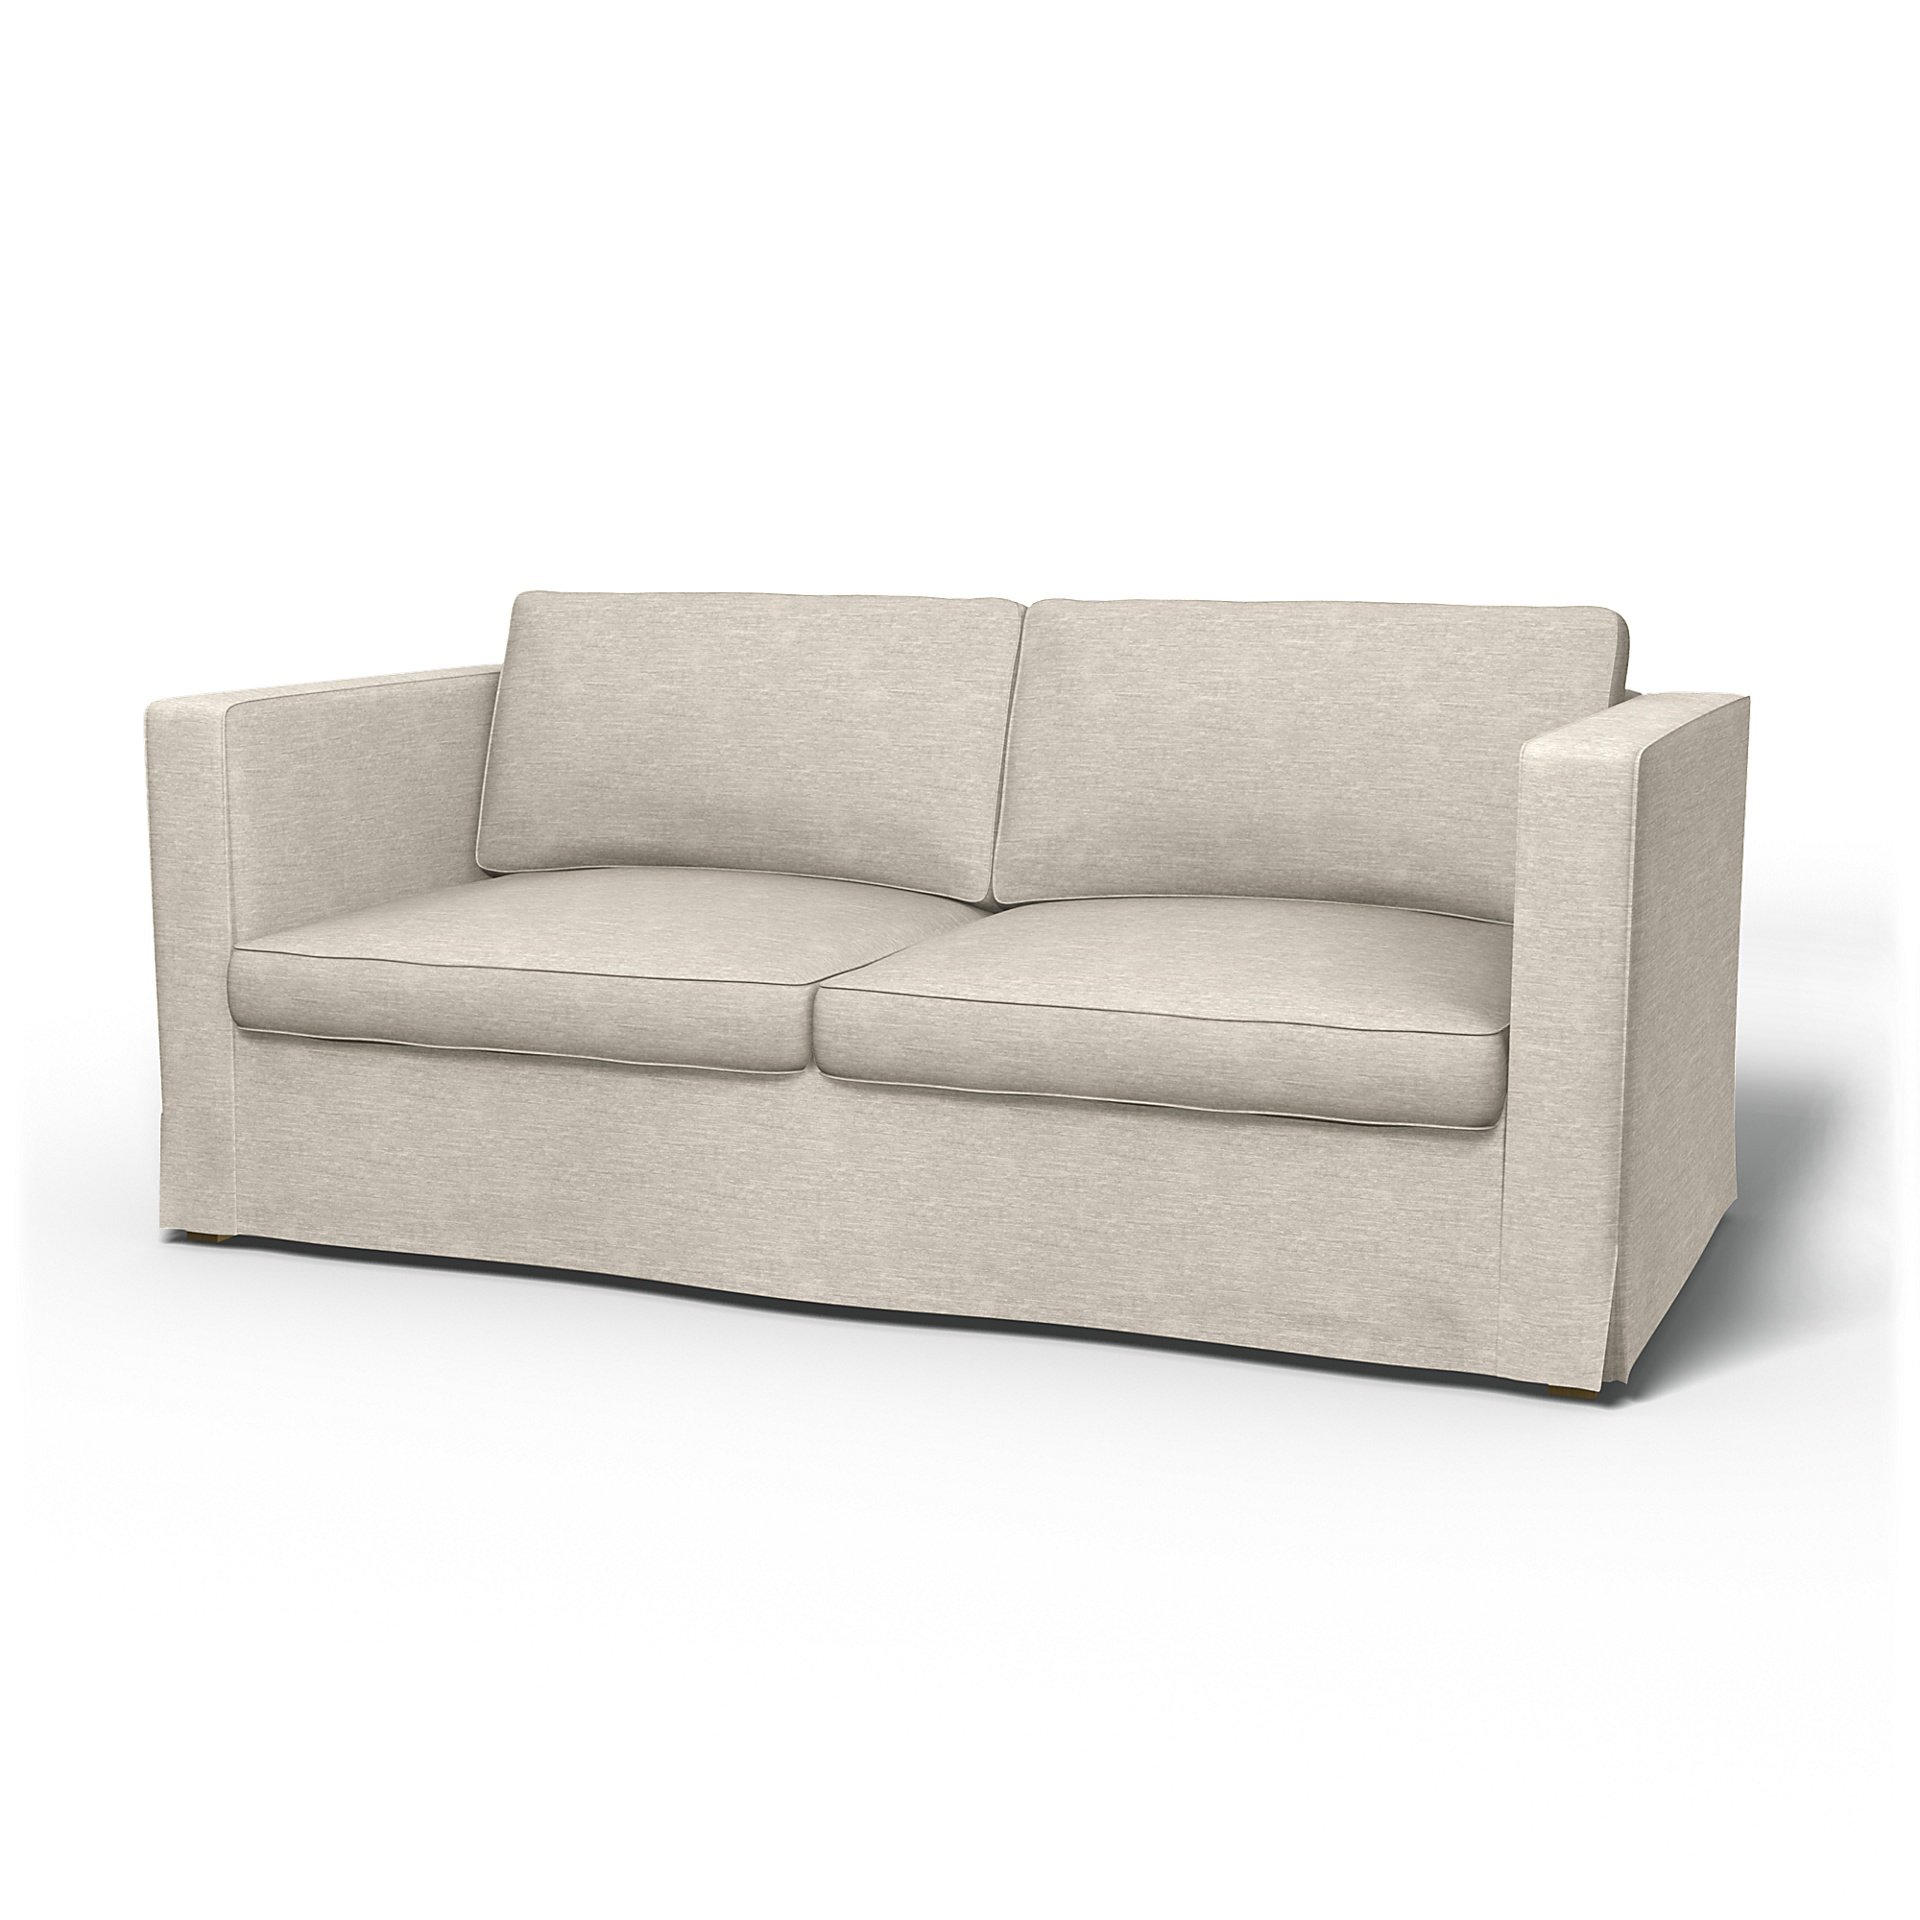 IKEA - Karlanda Sofa Bed Cover, Natural White, Velvet - Bemz